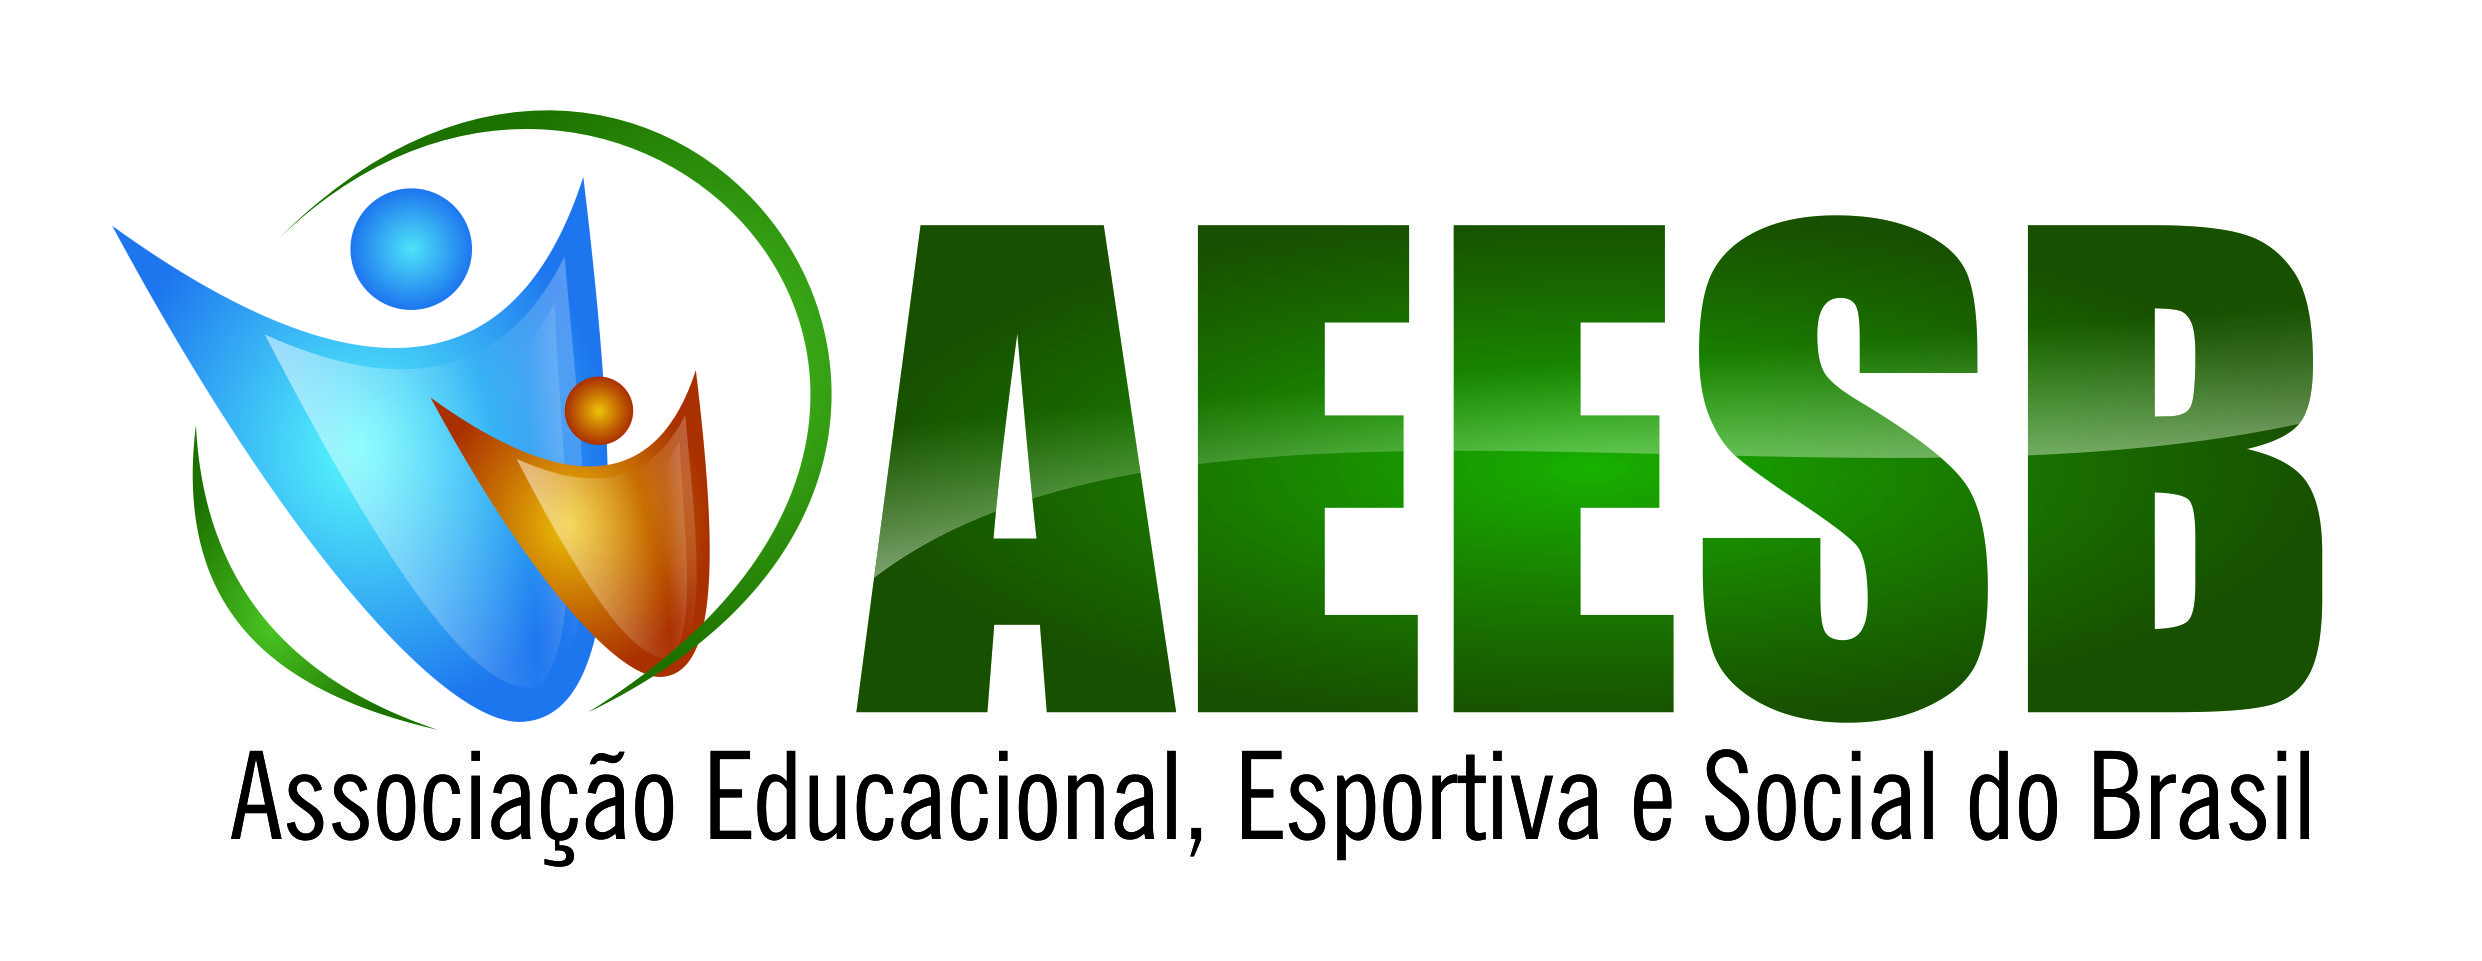 AEESB - ASSOCIAÇÃO EDUCACIONAL,ESPORTIVA E SOCIAL DO BRASIL 